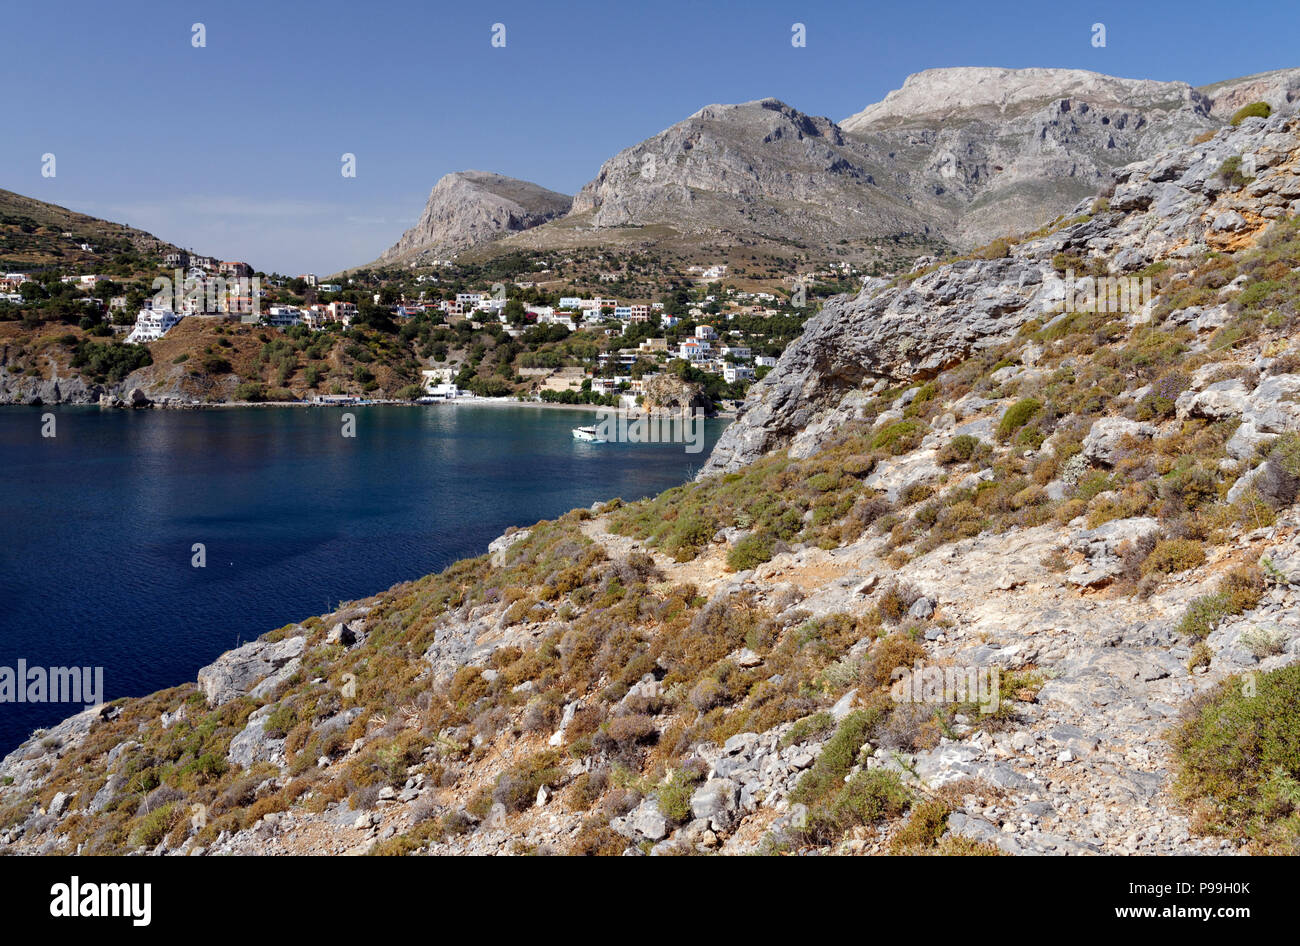 Die dramatische Berglandschaft von kalimnos oder Kalymnos, Linaria Bay, oder Kalimnos Panormas, Kalymnos, Dodekanes, Griechenland. Stockfoto